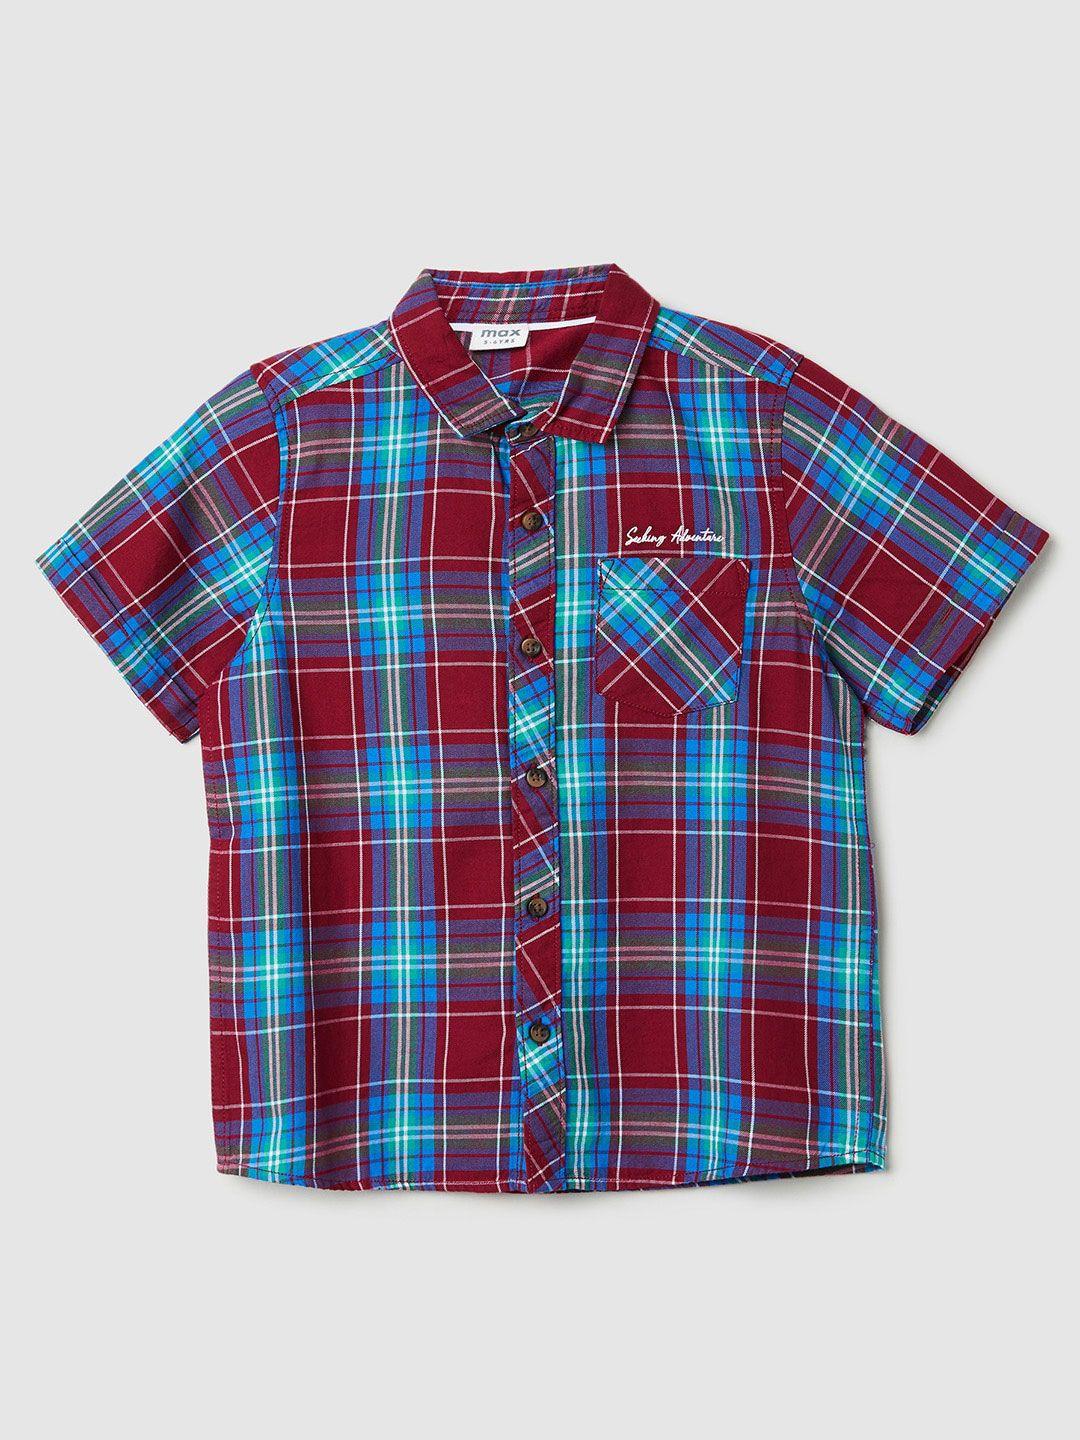 max boys tartan checks opaque checked cotton casual shirt